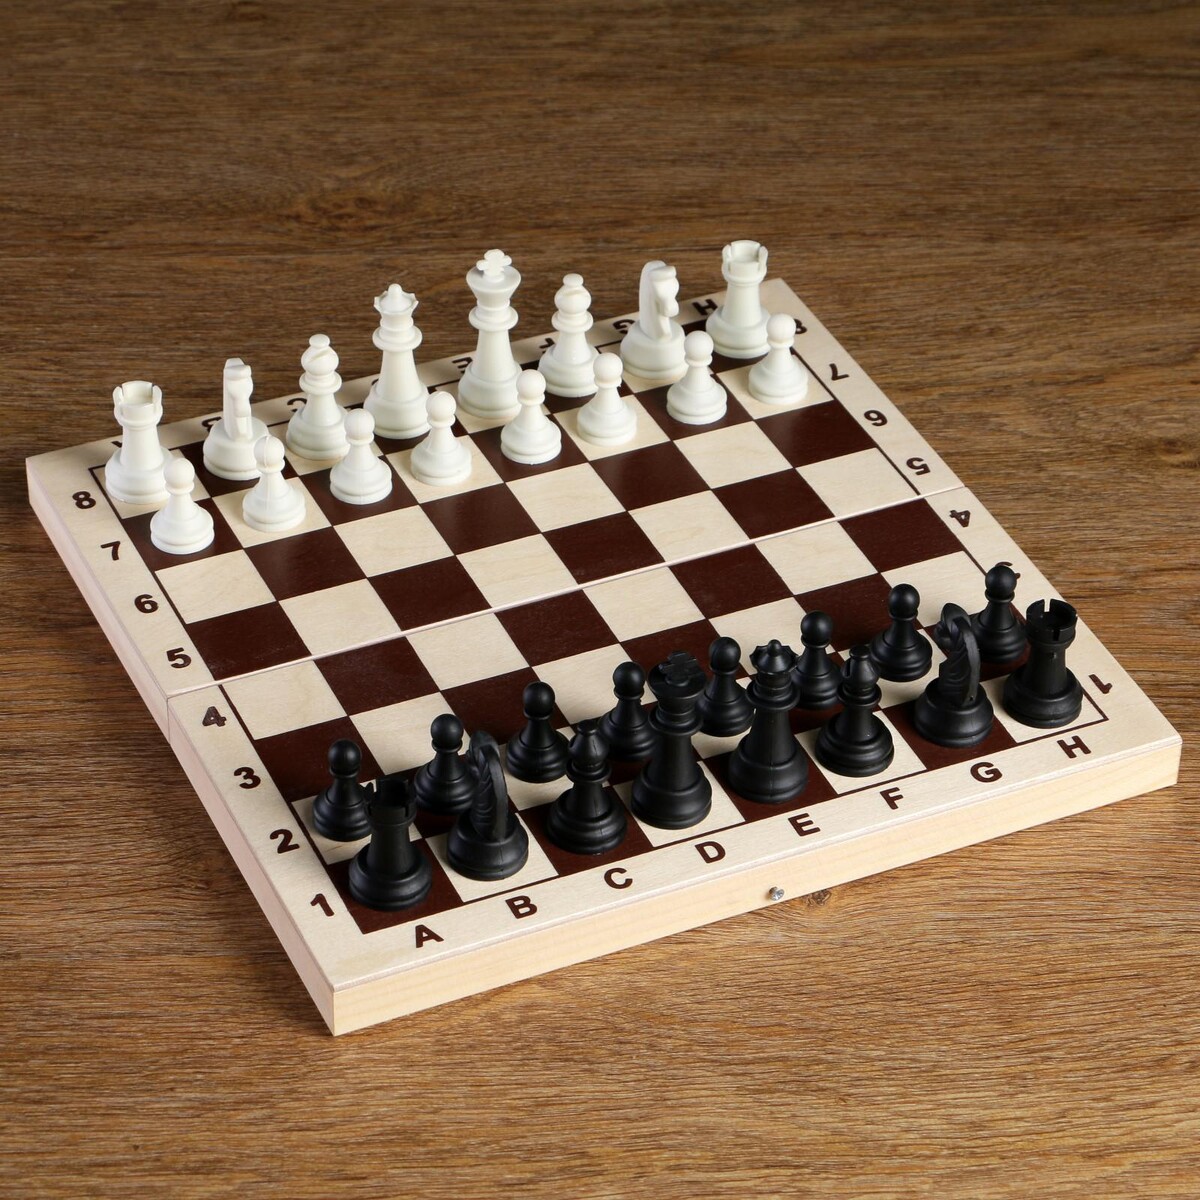 Шахматные фигуры, король h-6.2 см, пешка h-3.2 см, черно-белые король шаманов том 9